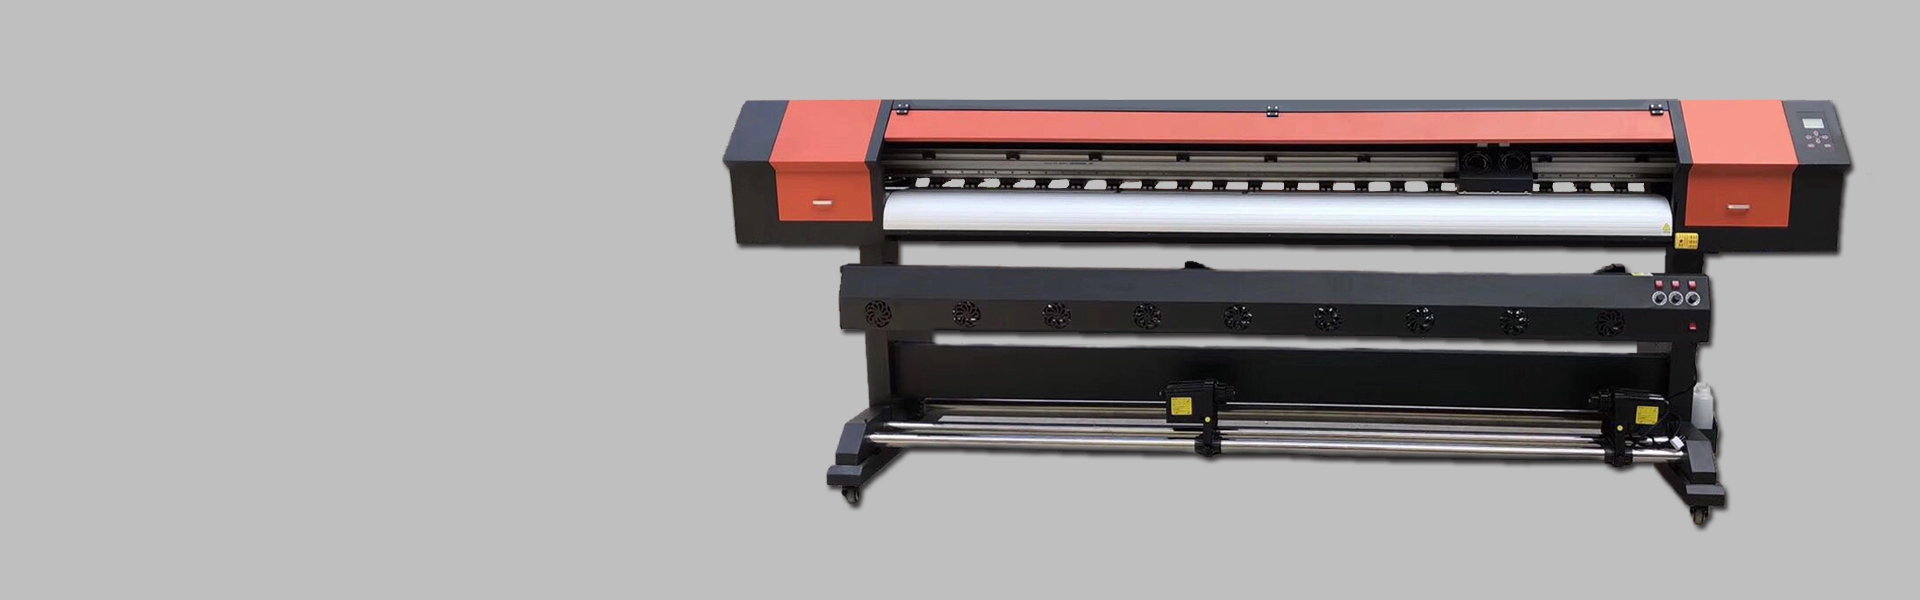 2.5m XP600 Printer